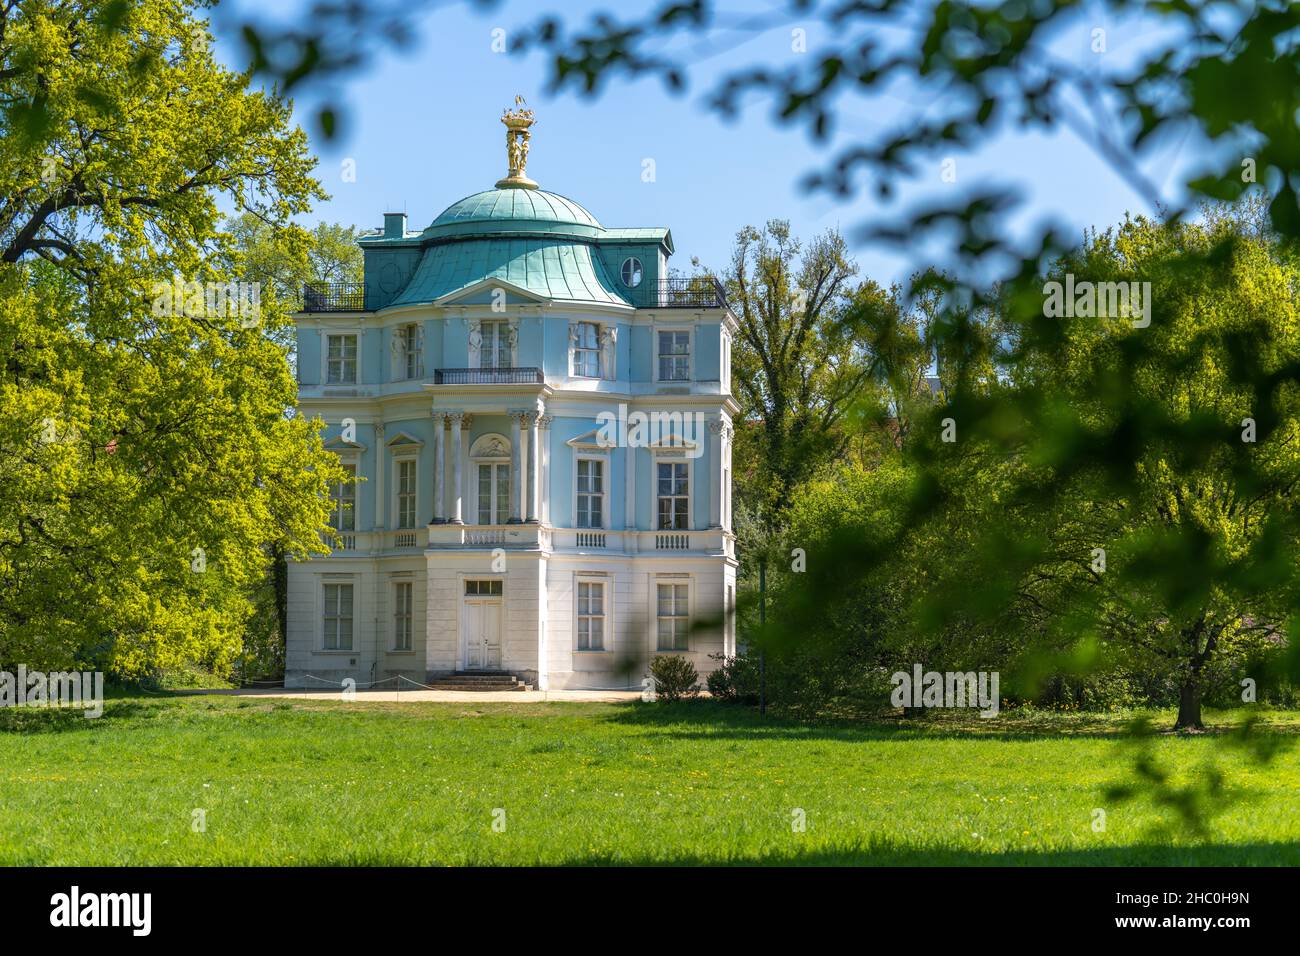 Belvedere im Schlosspark Charlottenburg, Berlin, erbaut von Carl Gotthard Langhans, 1788-89 Stock Photo